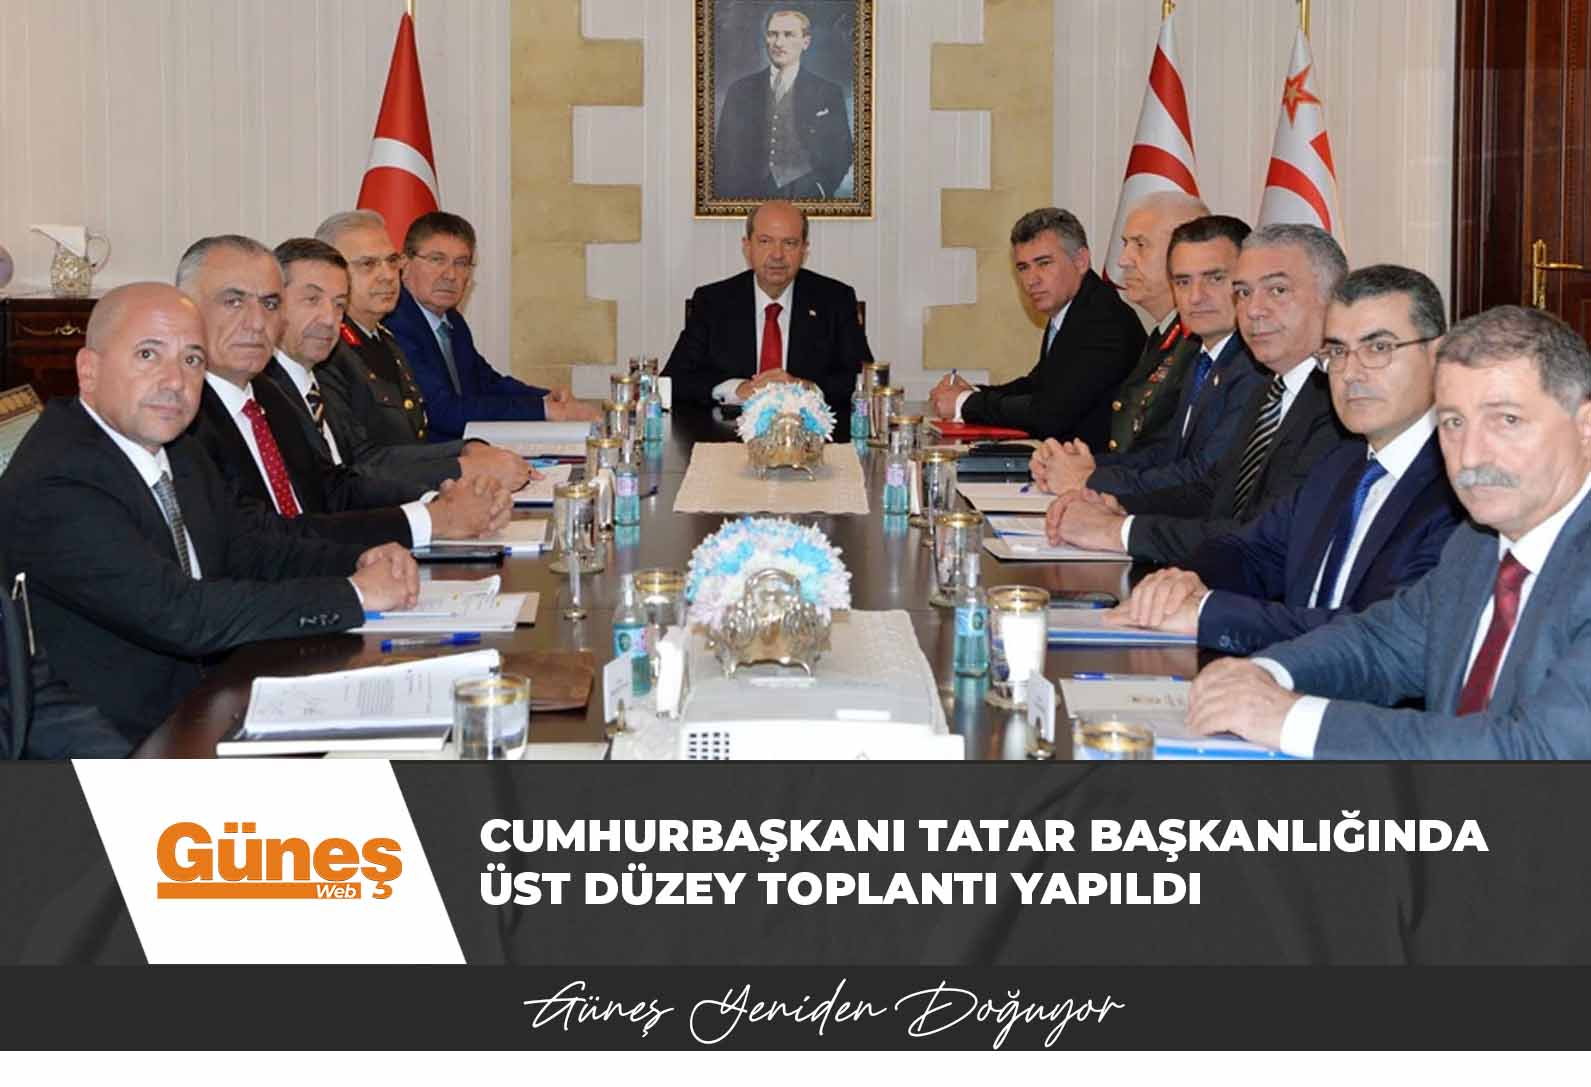 Cumhurbaşkanı Tatar başkanlığında üst düzey toplantı yapıldı